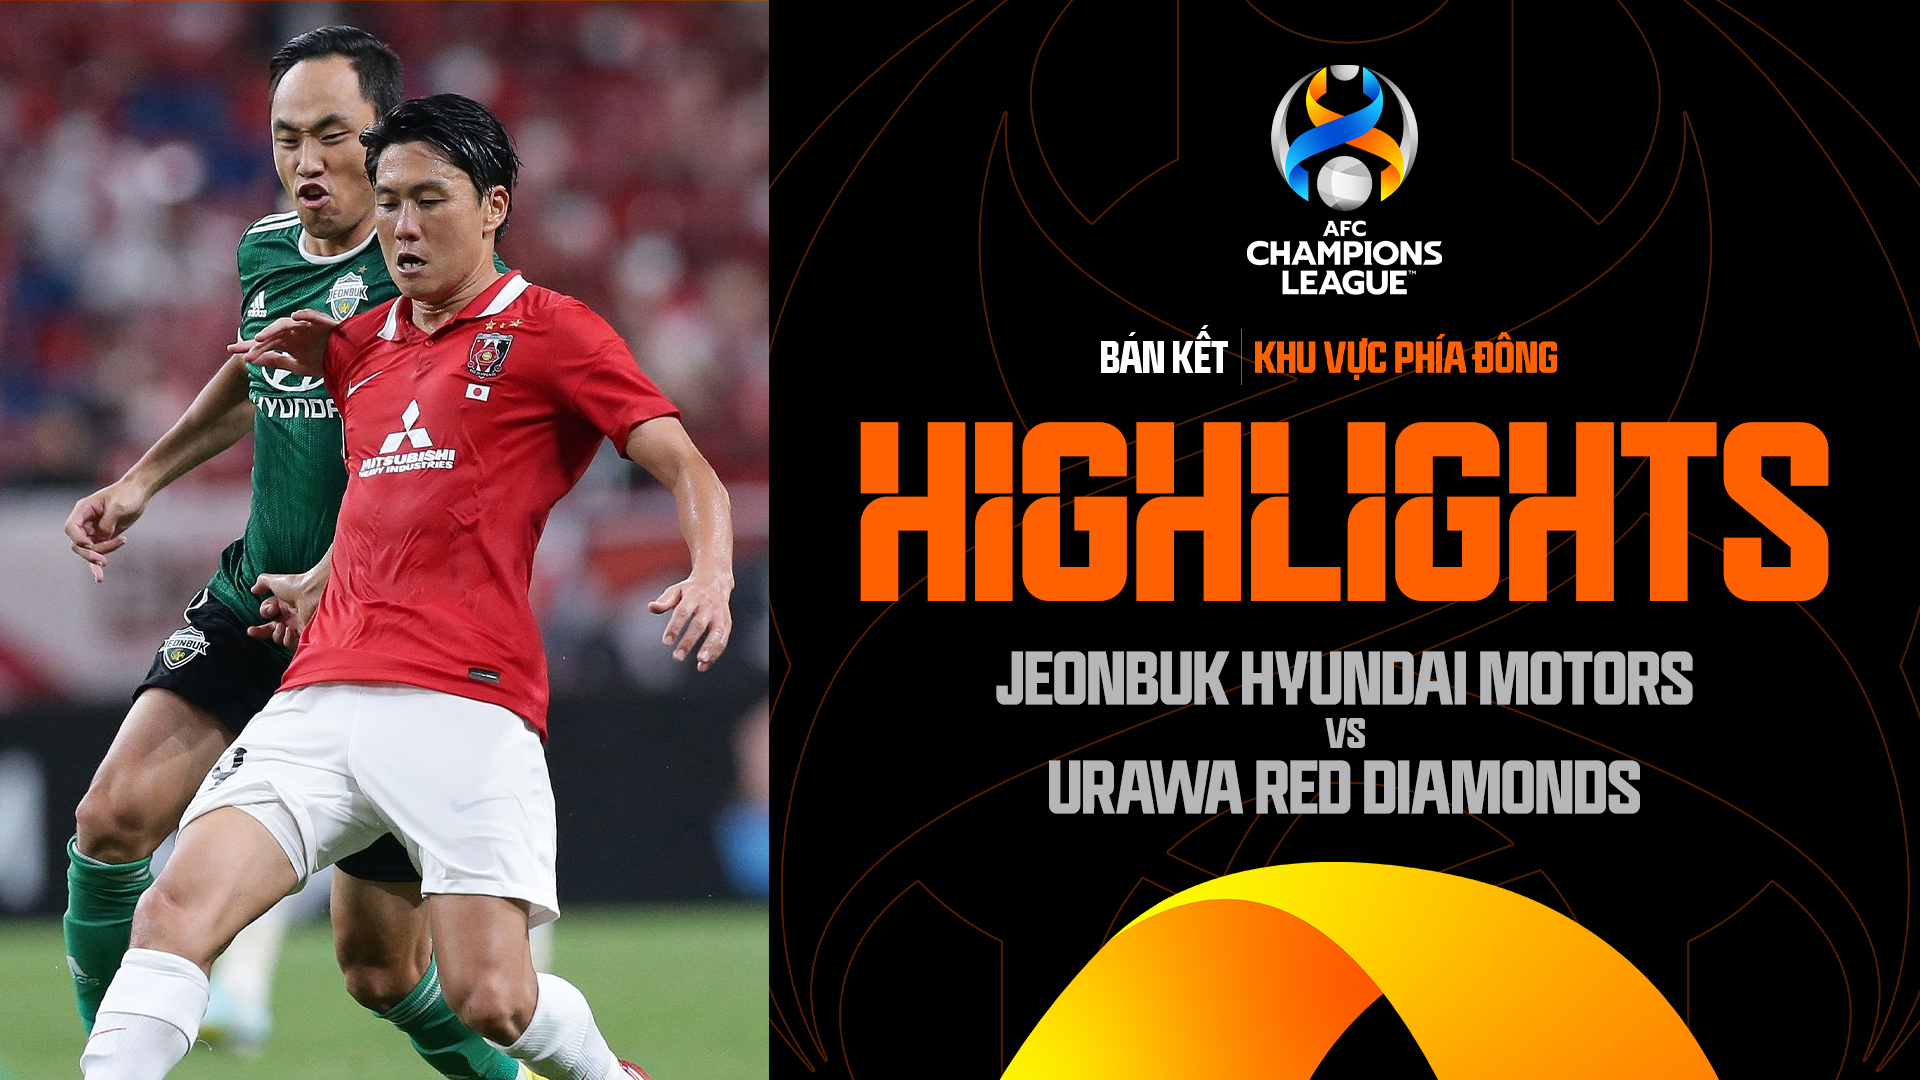 Jeonbuk Hyundai Motors - Urawa Red Diamonds Highlights - AFC Champions League